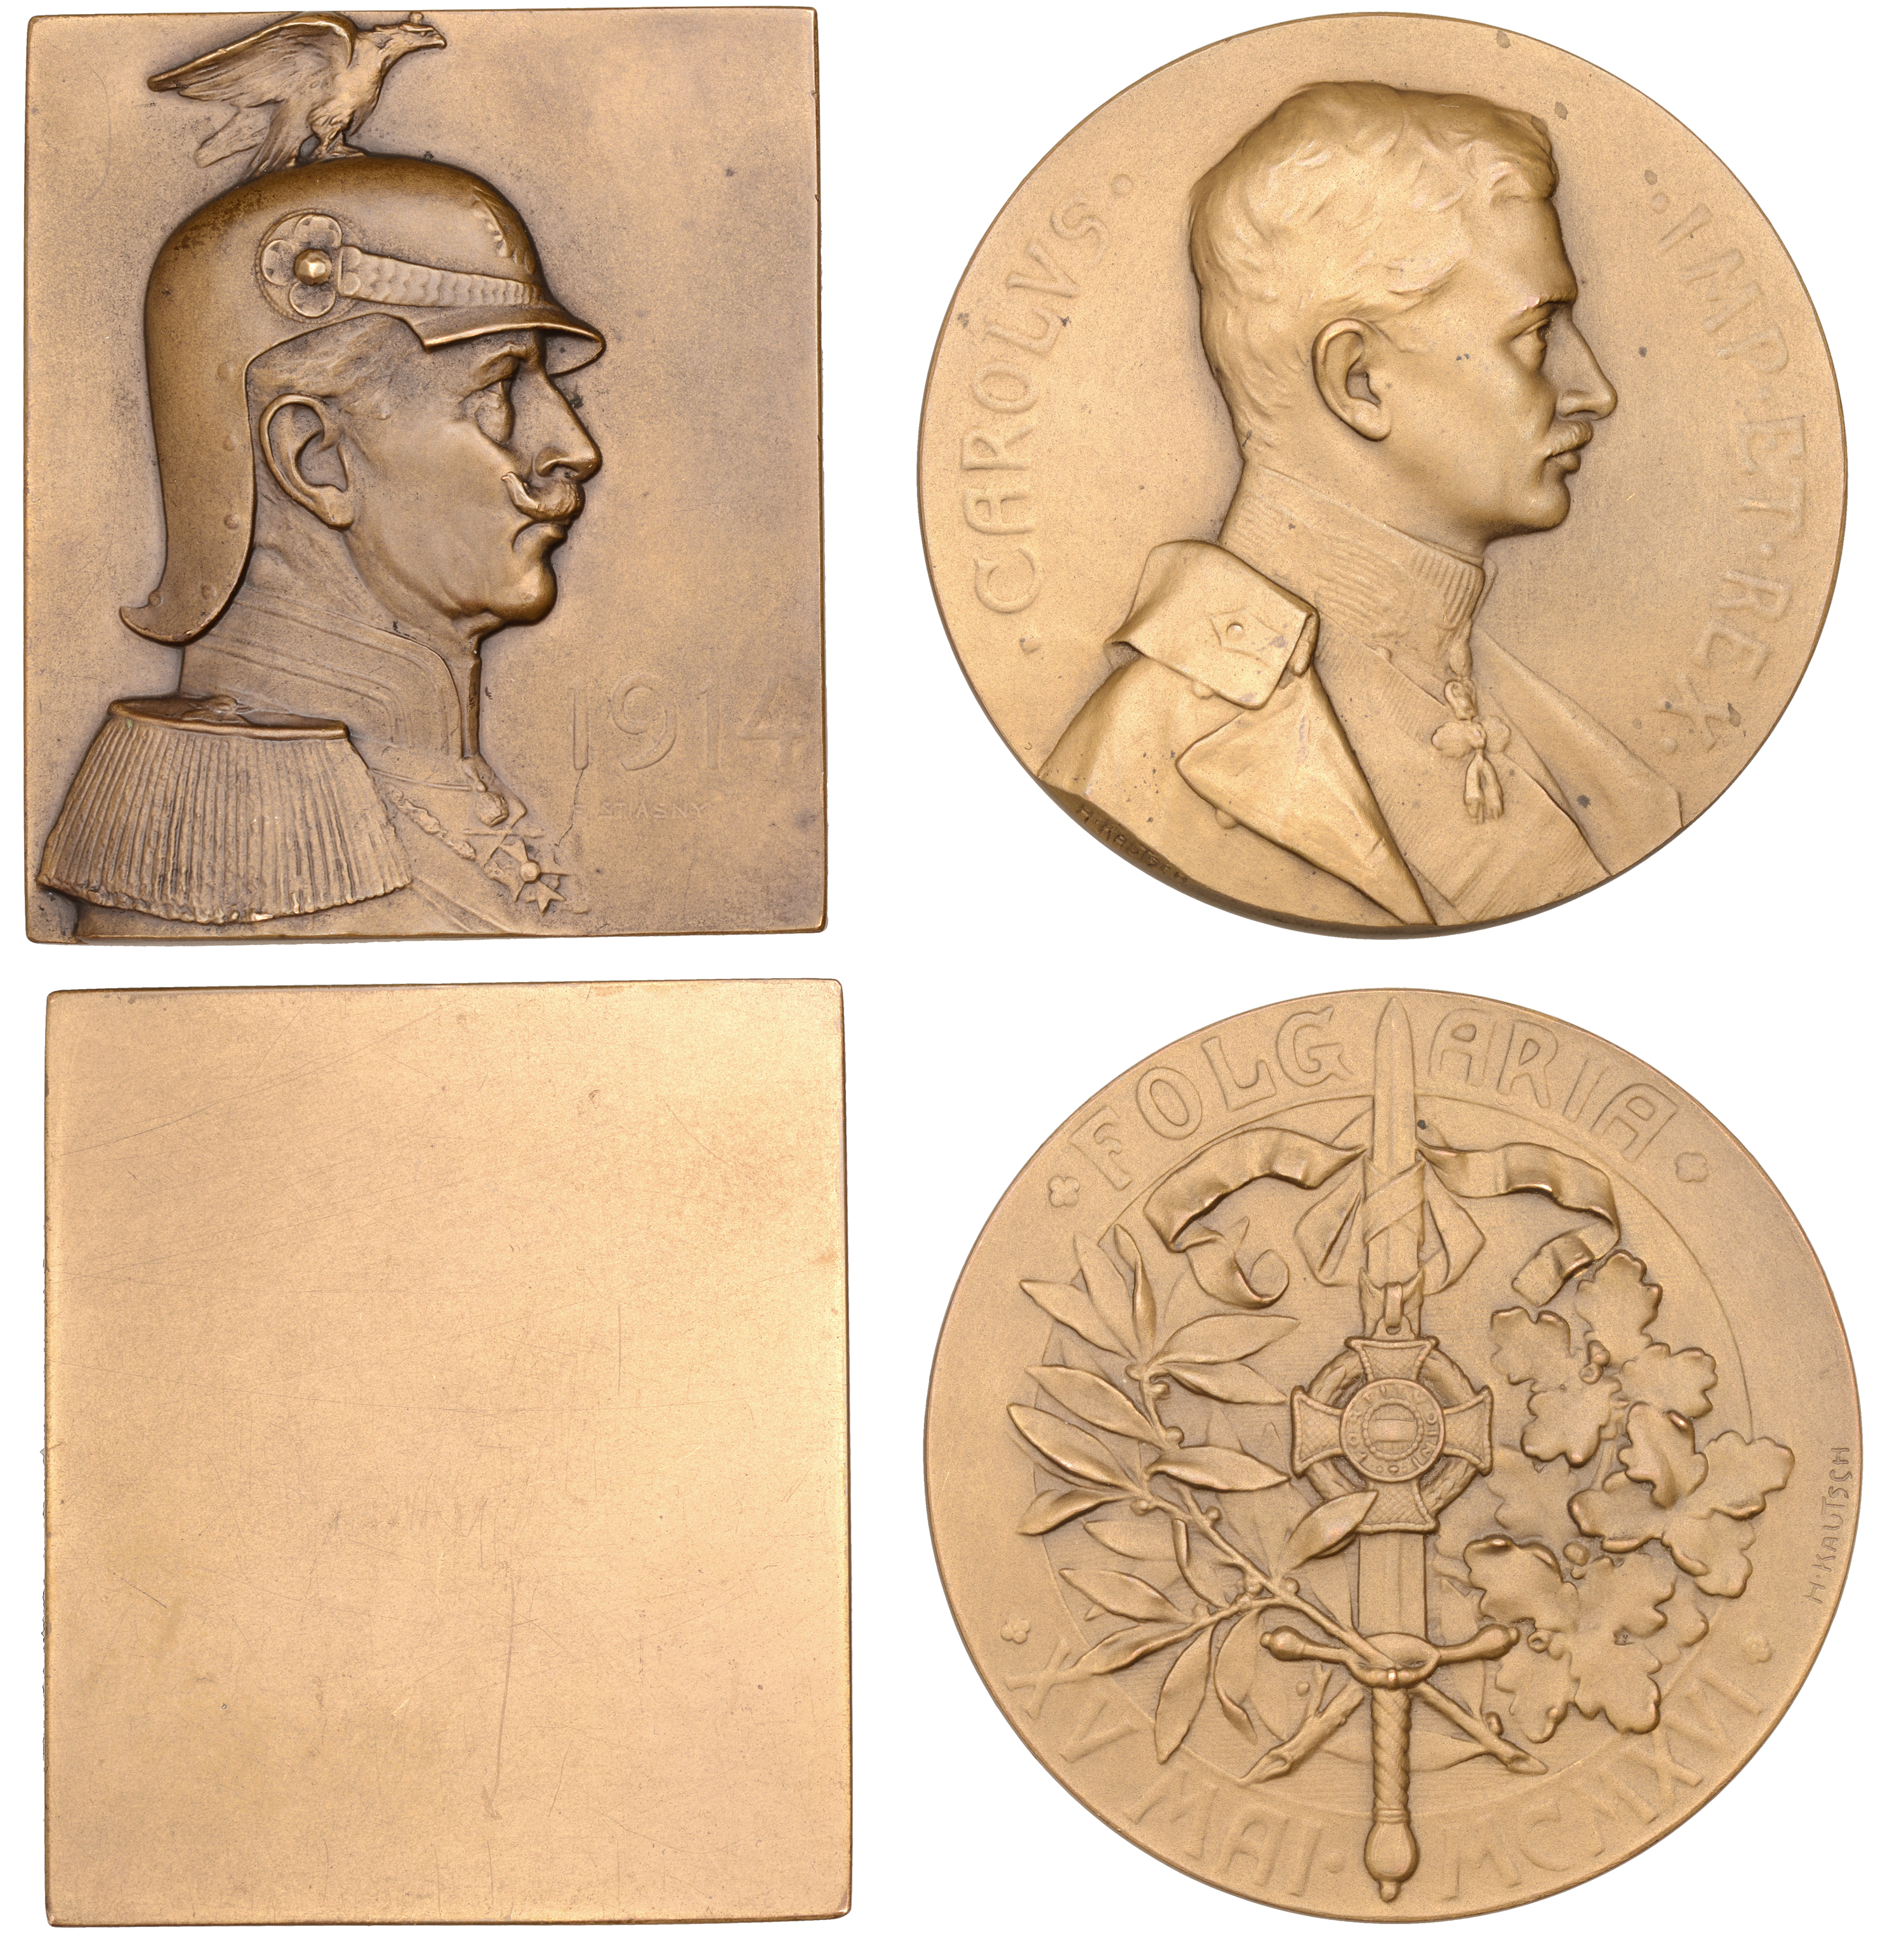 GERMANY, Wilhelm II, 1914, a uniface bronze plaquette by F. Stiasny, 65 x 55mm; AUSTRIA, Kar...